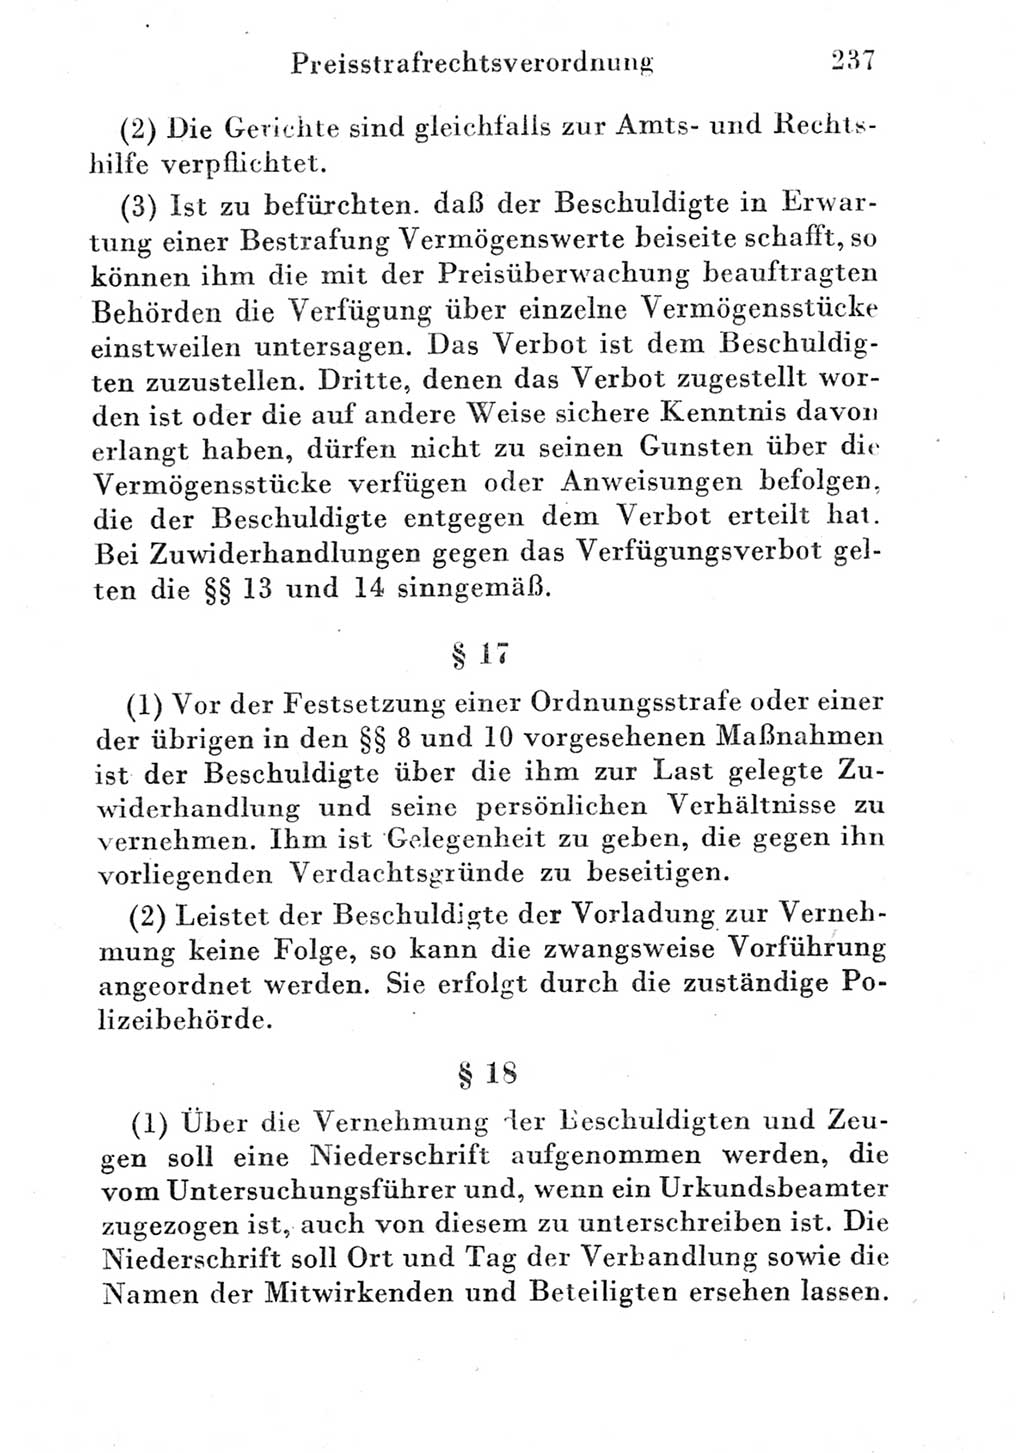 Strafgesetzbuch (StGB) und andere Strafgesetze [Deutsche Demokratische Republik (DDR)] 1951, Seite 237 (StGB Strafges. DDR 1951, S. 237)